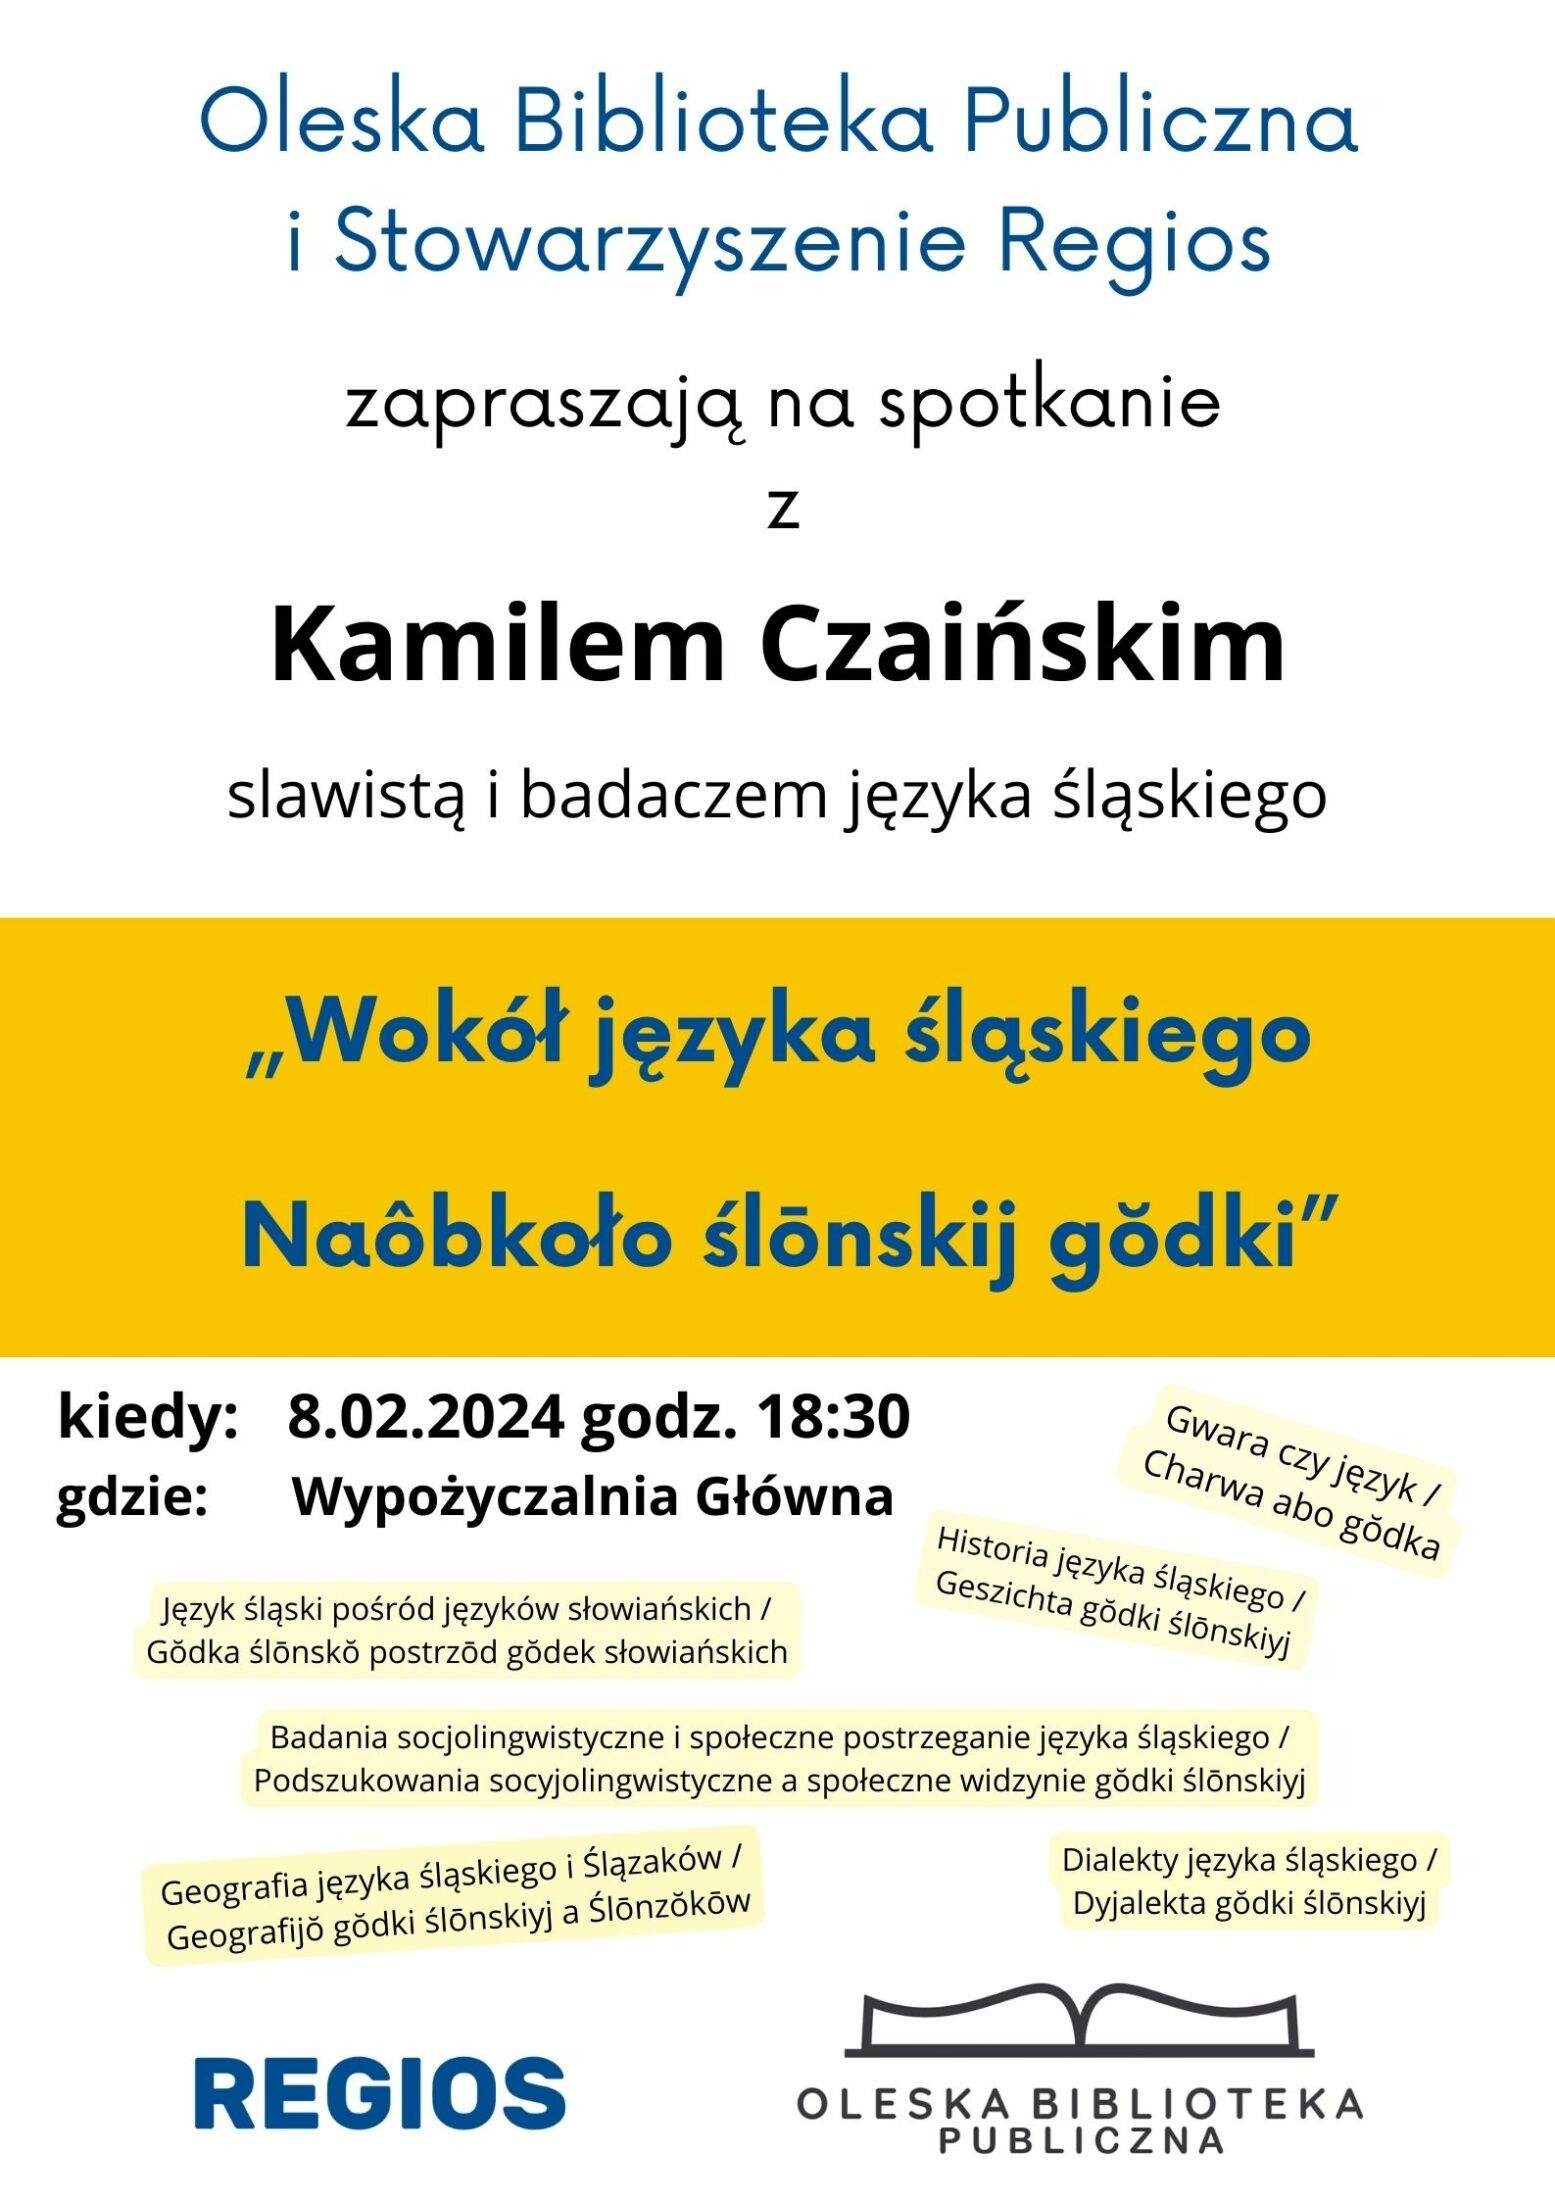 Wokół języka śląskiego - spotkanie